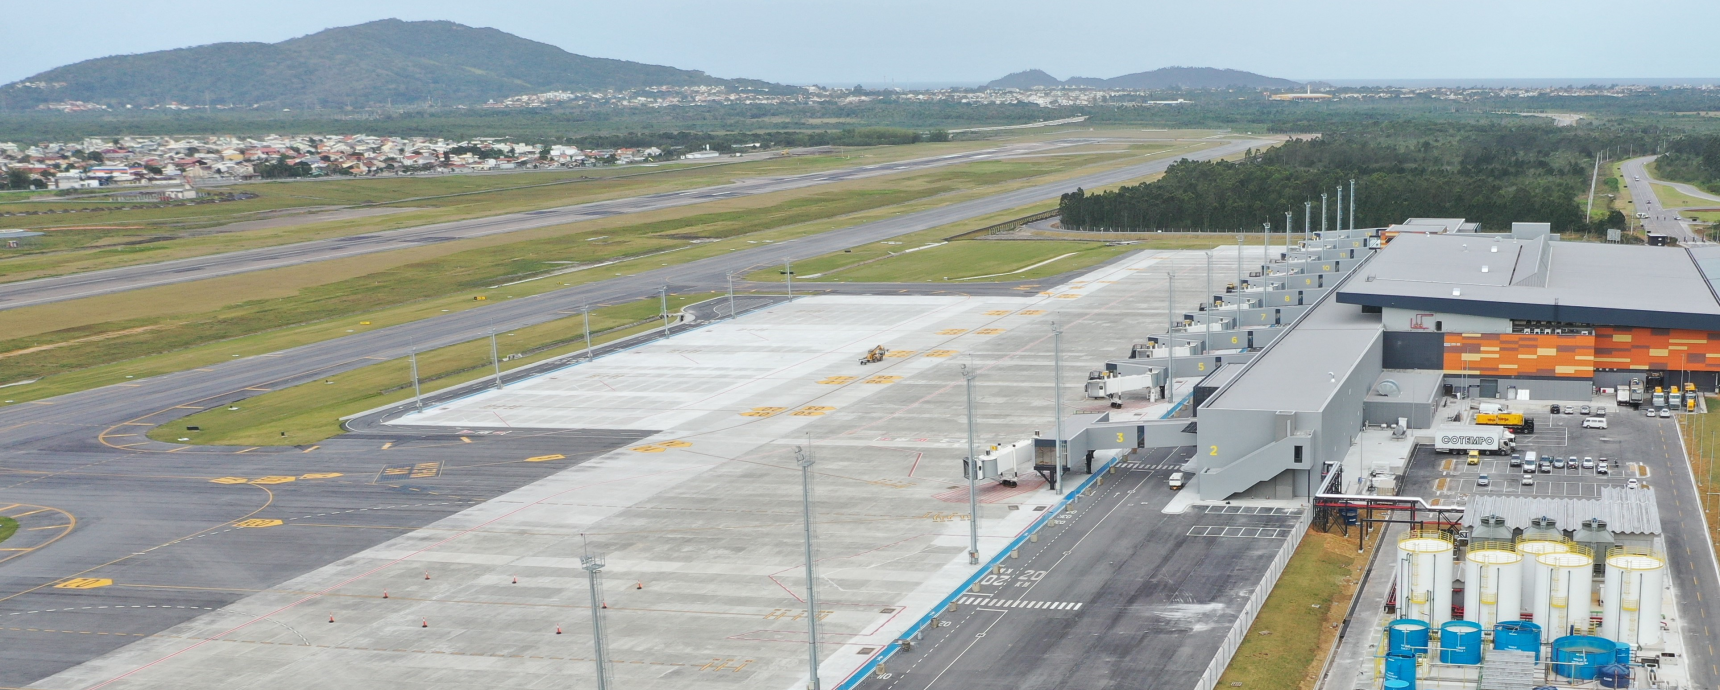 Aeroporto Internacional de Florianópolis aberto e operacional